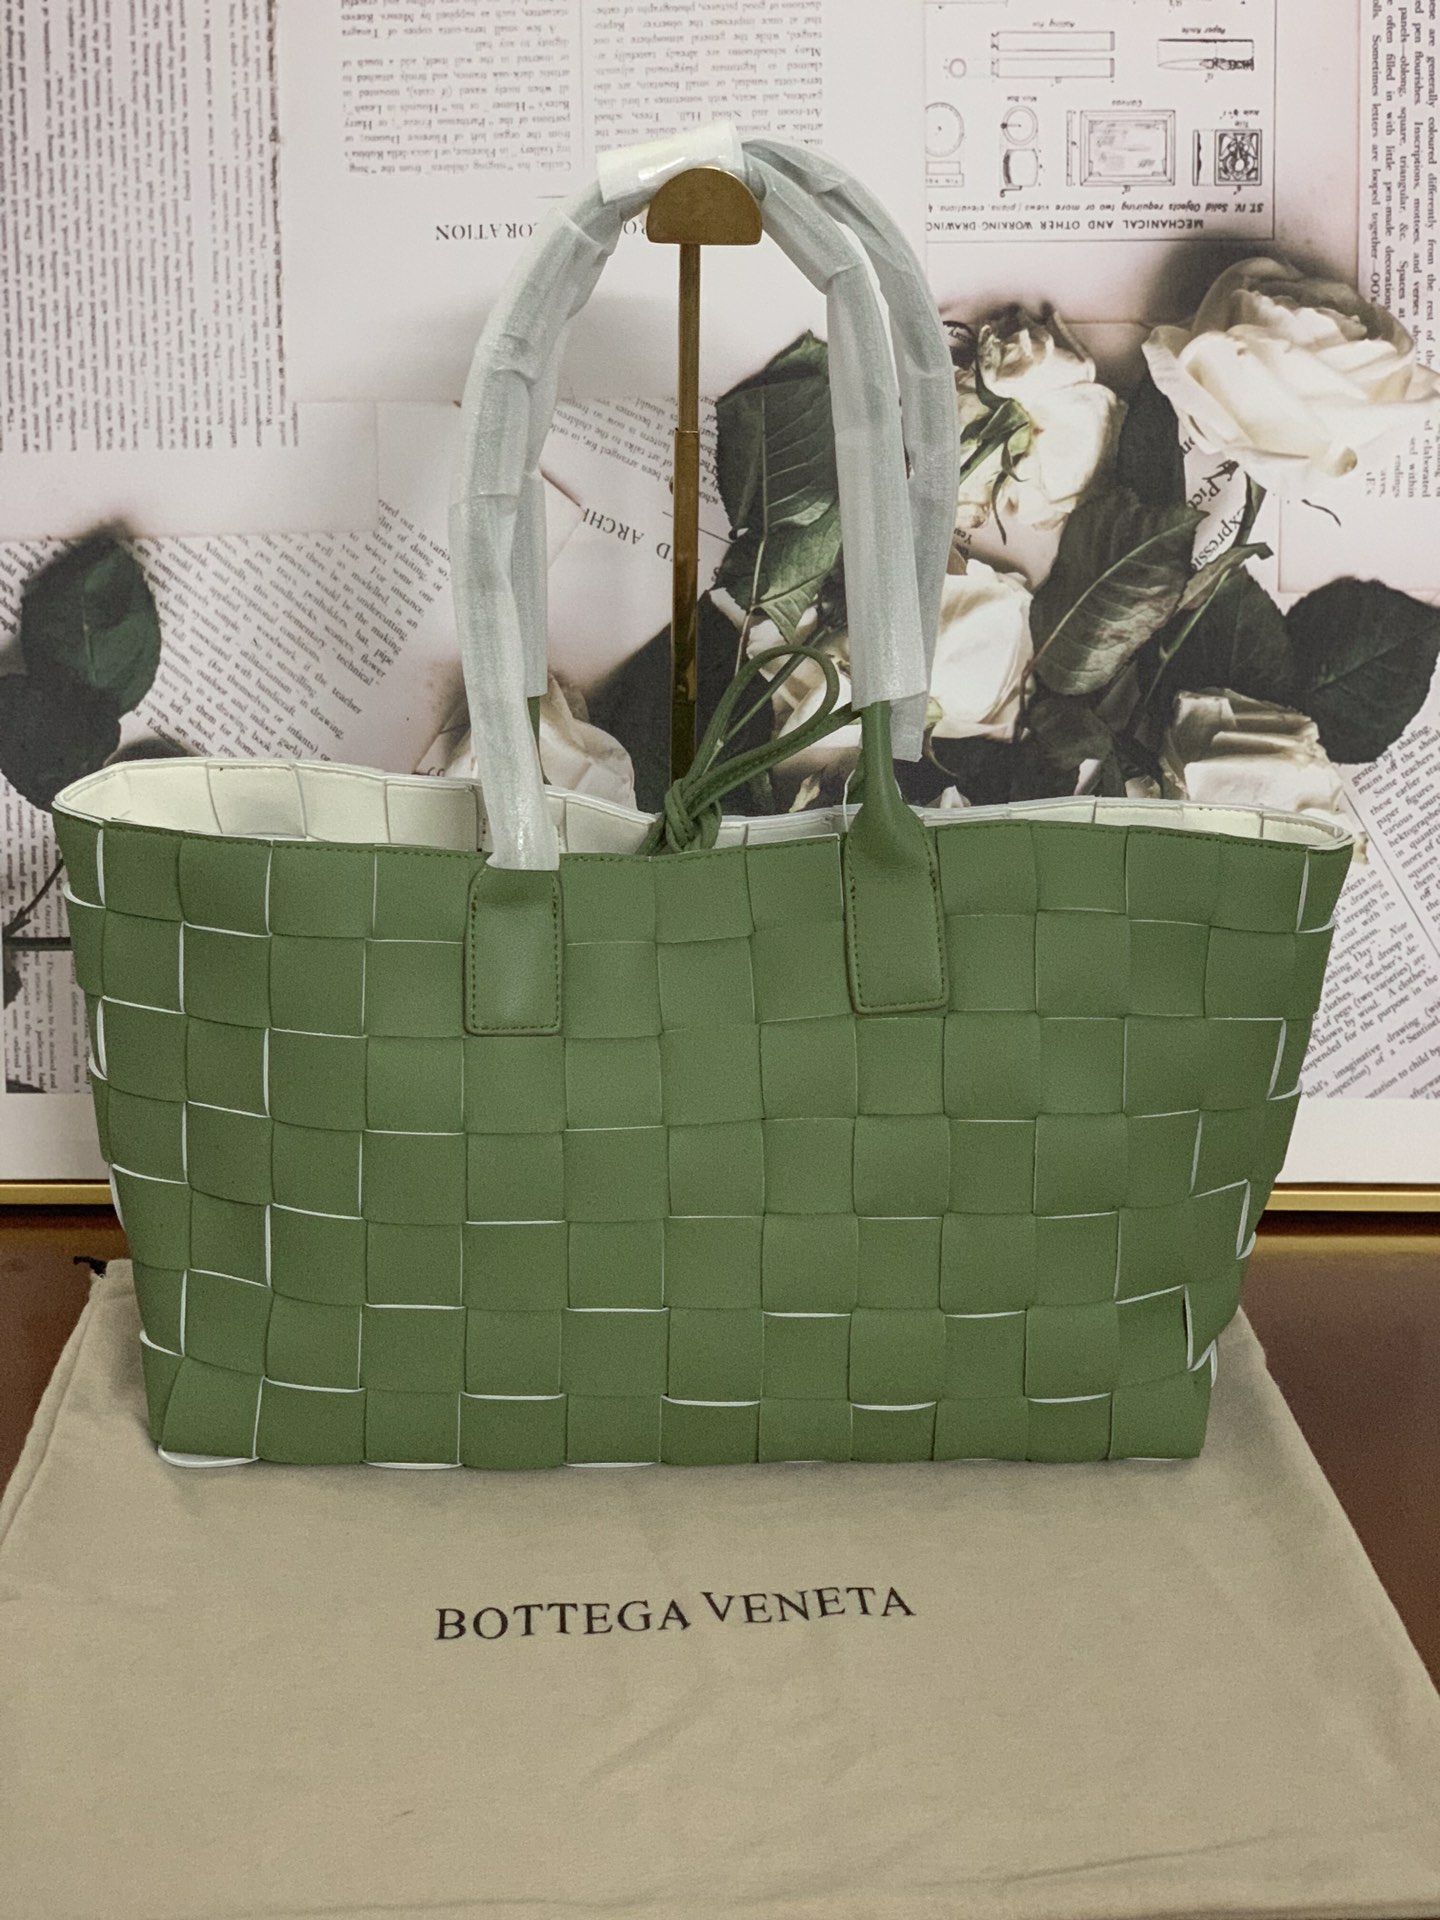 Bottega Veneta 보테가 베네타 인트레치아토 토트백